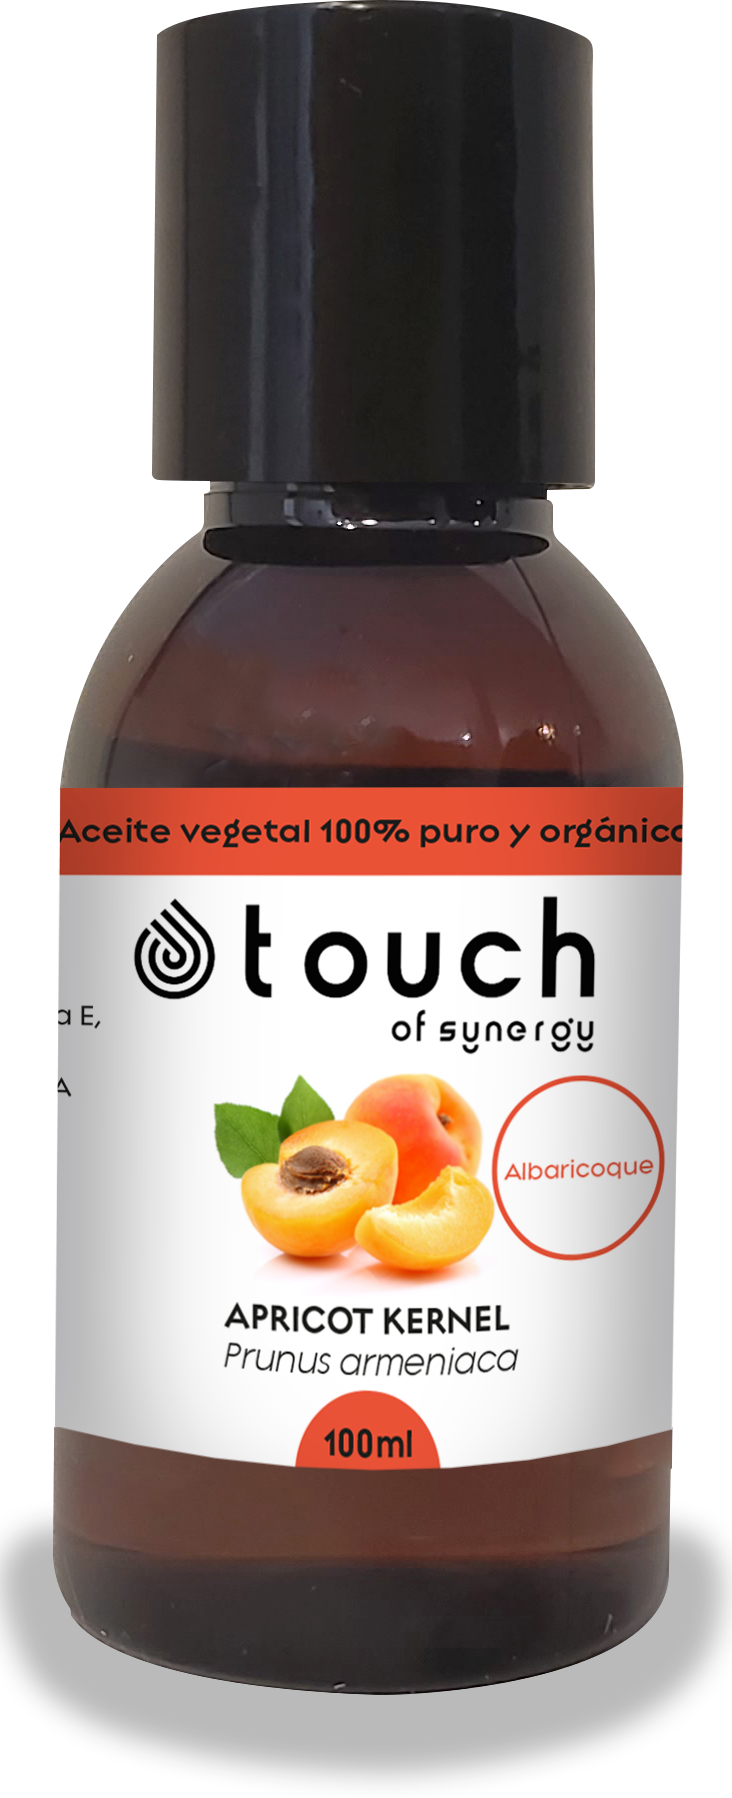 Albaricoque - Apricot Kernel